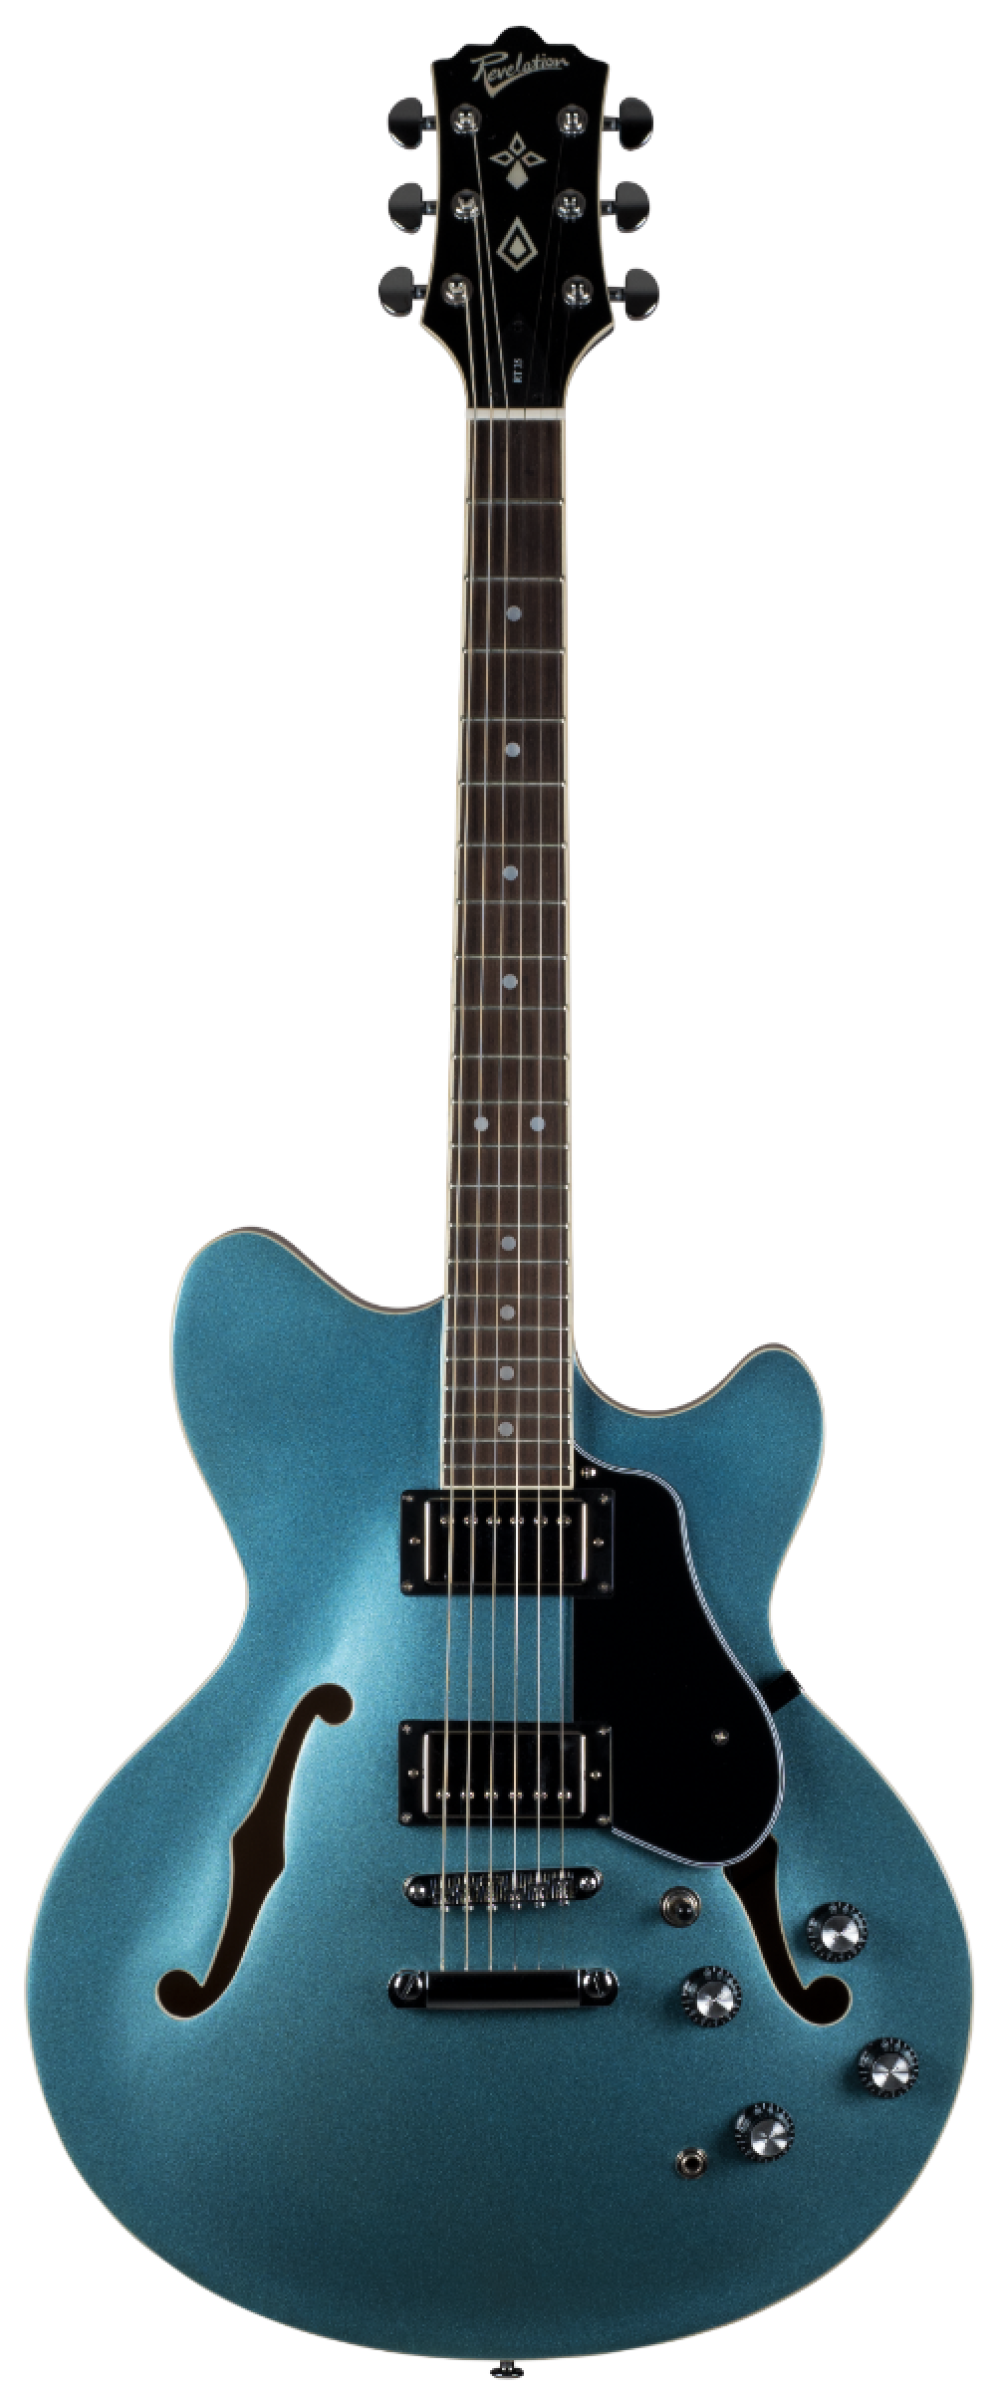 Acoustic Blue Guitar Transparent Background